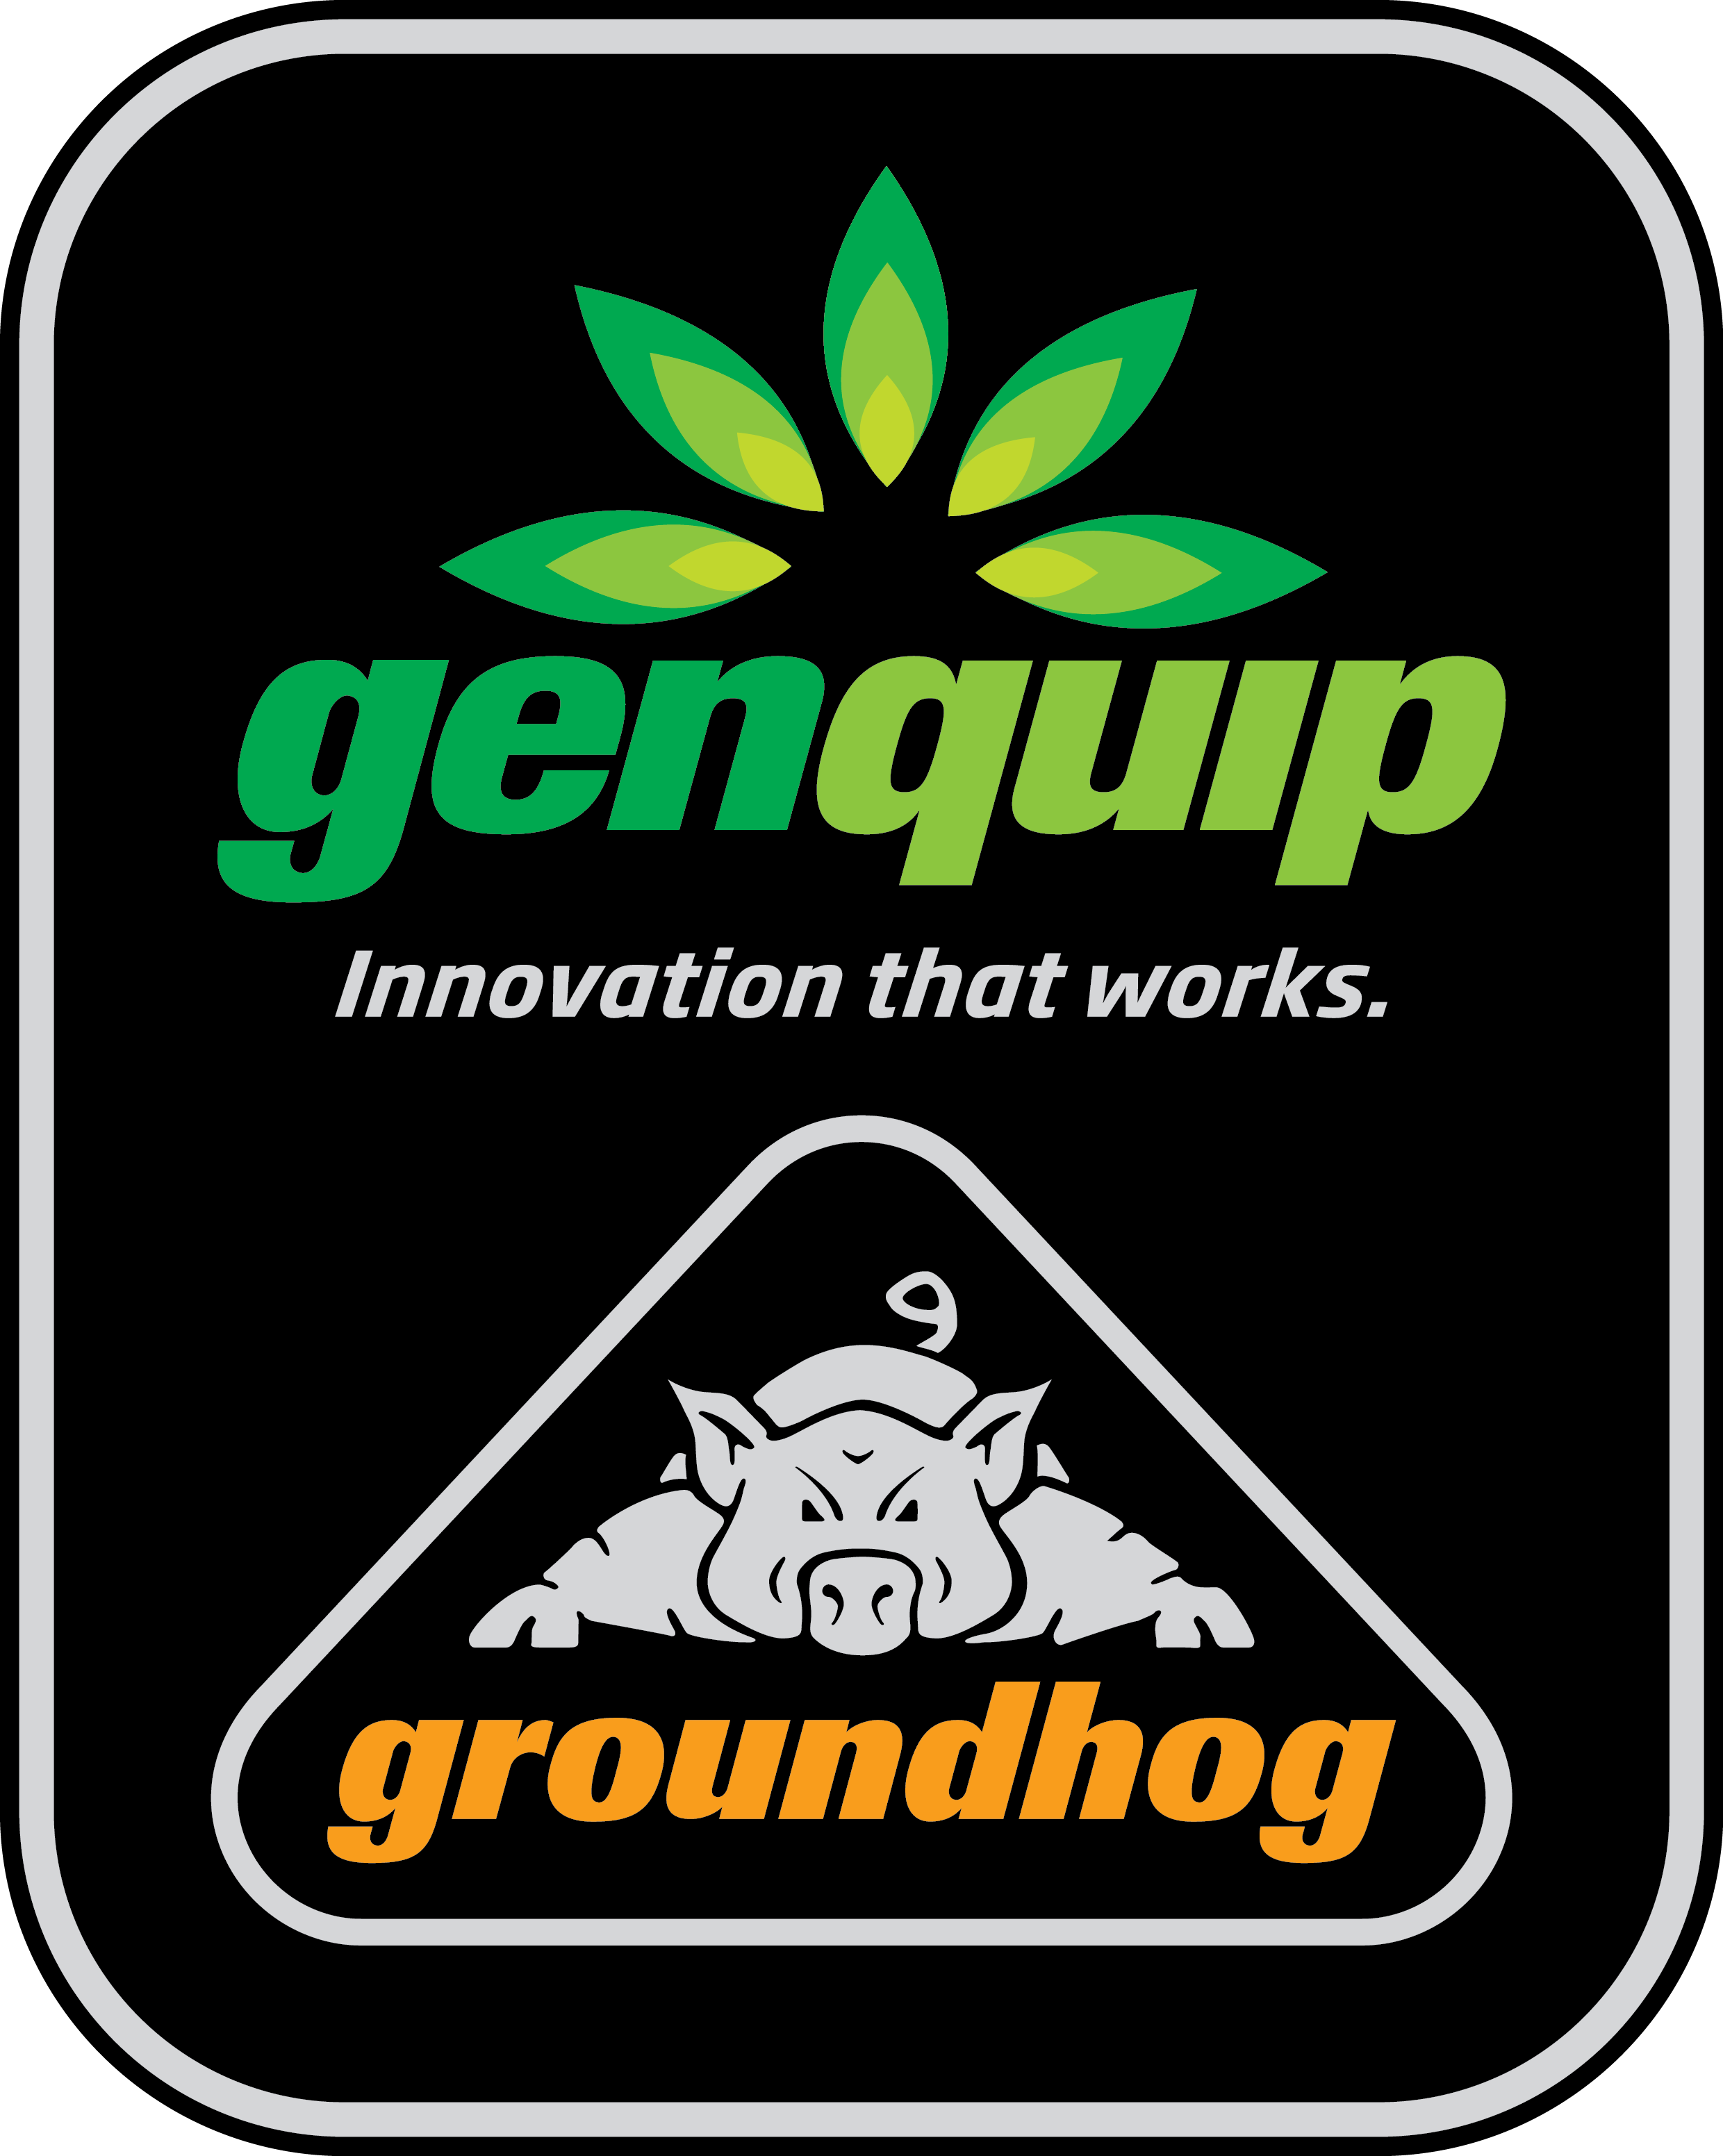 Genquip Groundhog